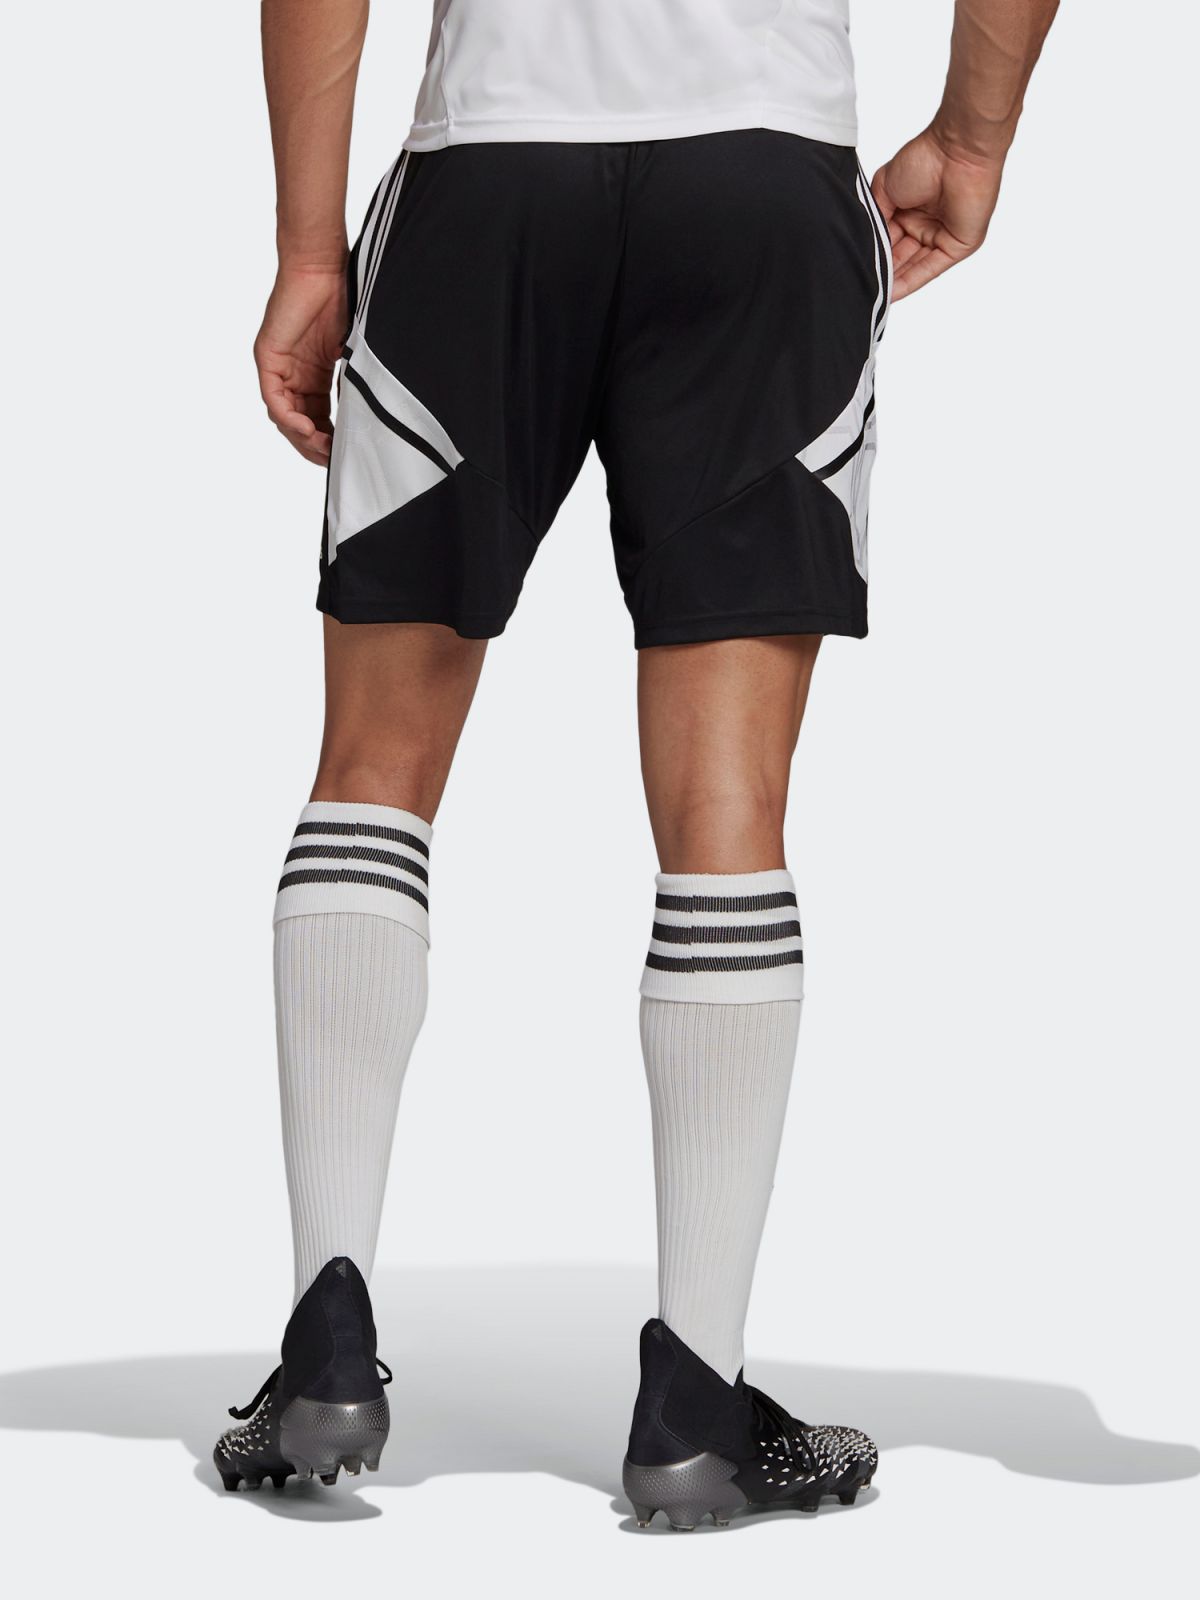  מכנסי כדורגל עם לוגו Condive 22 של ADIDAS Performance